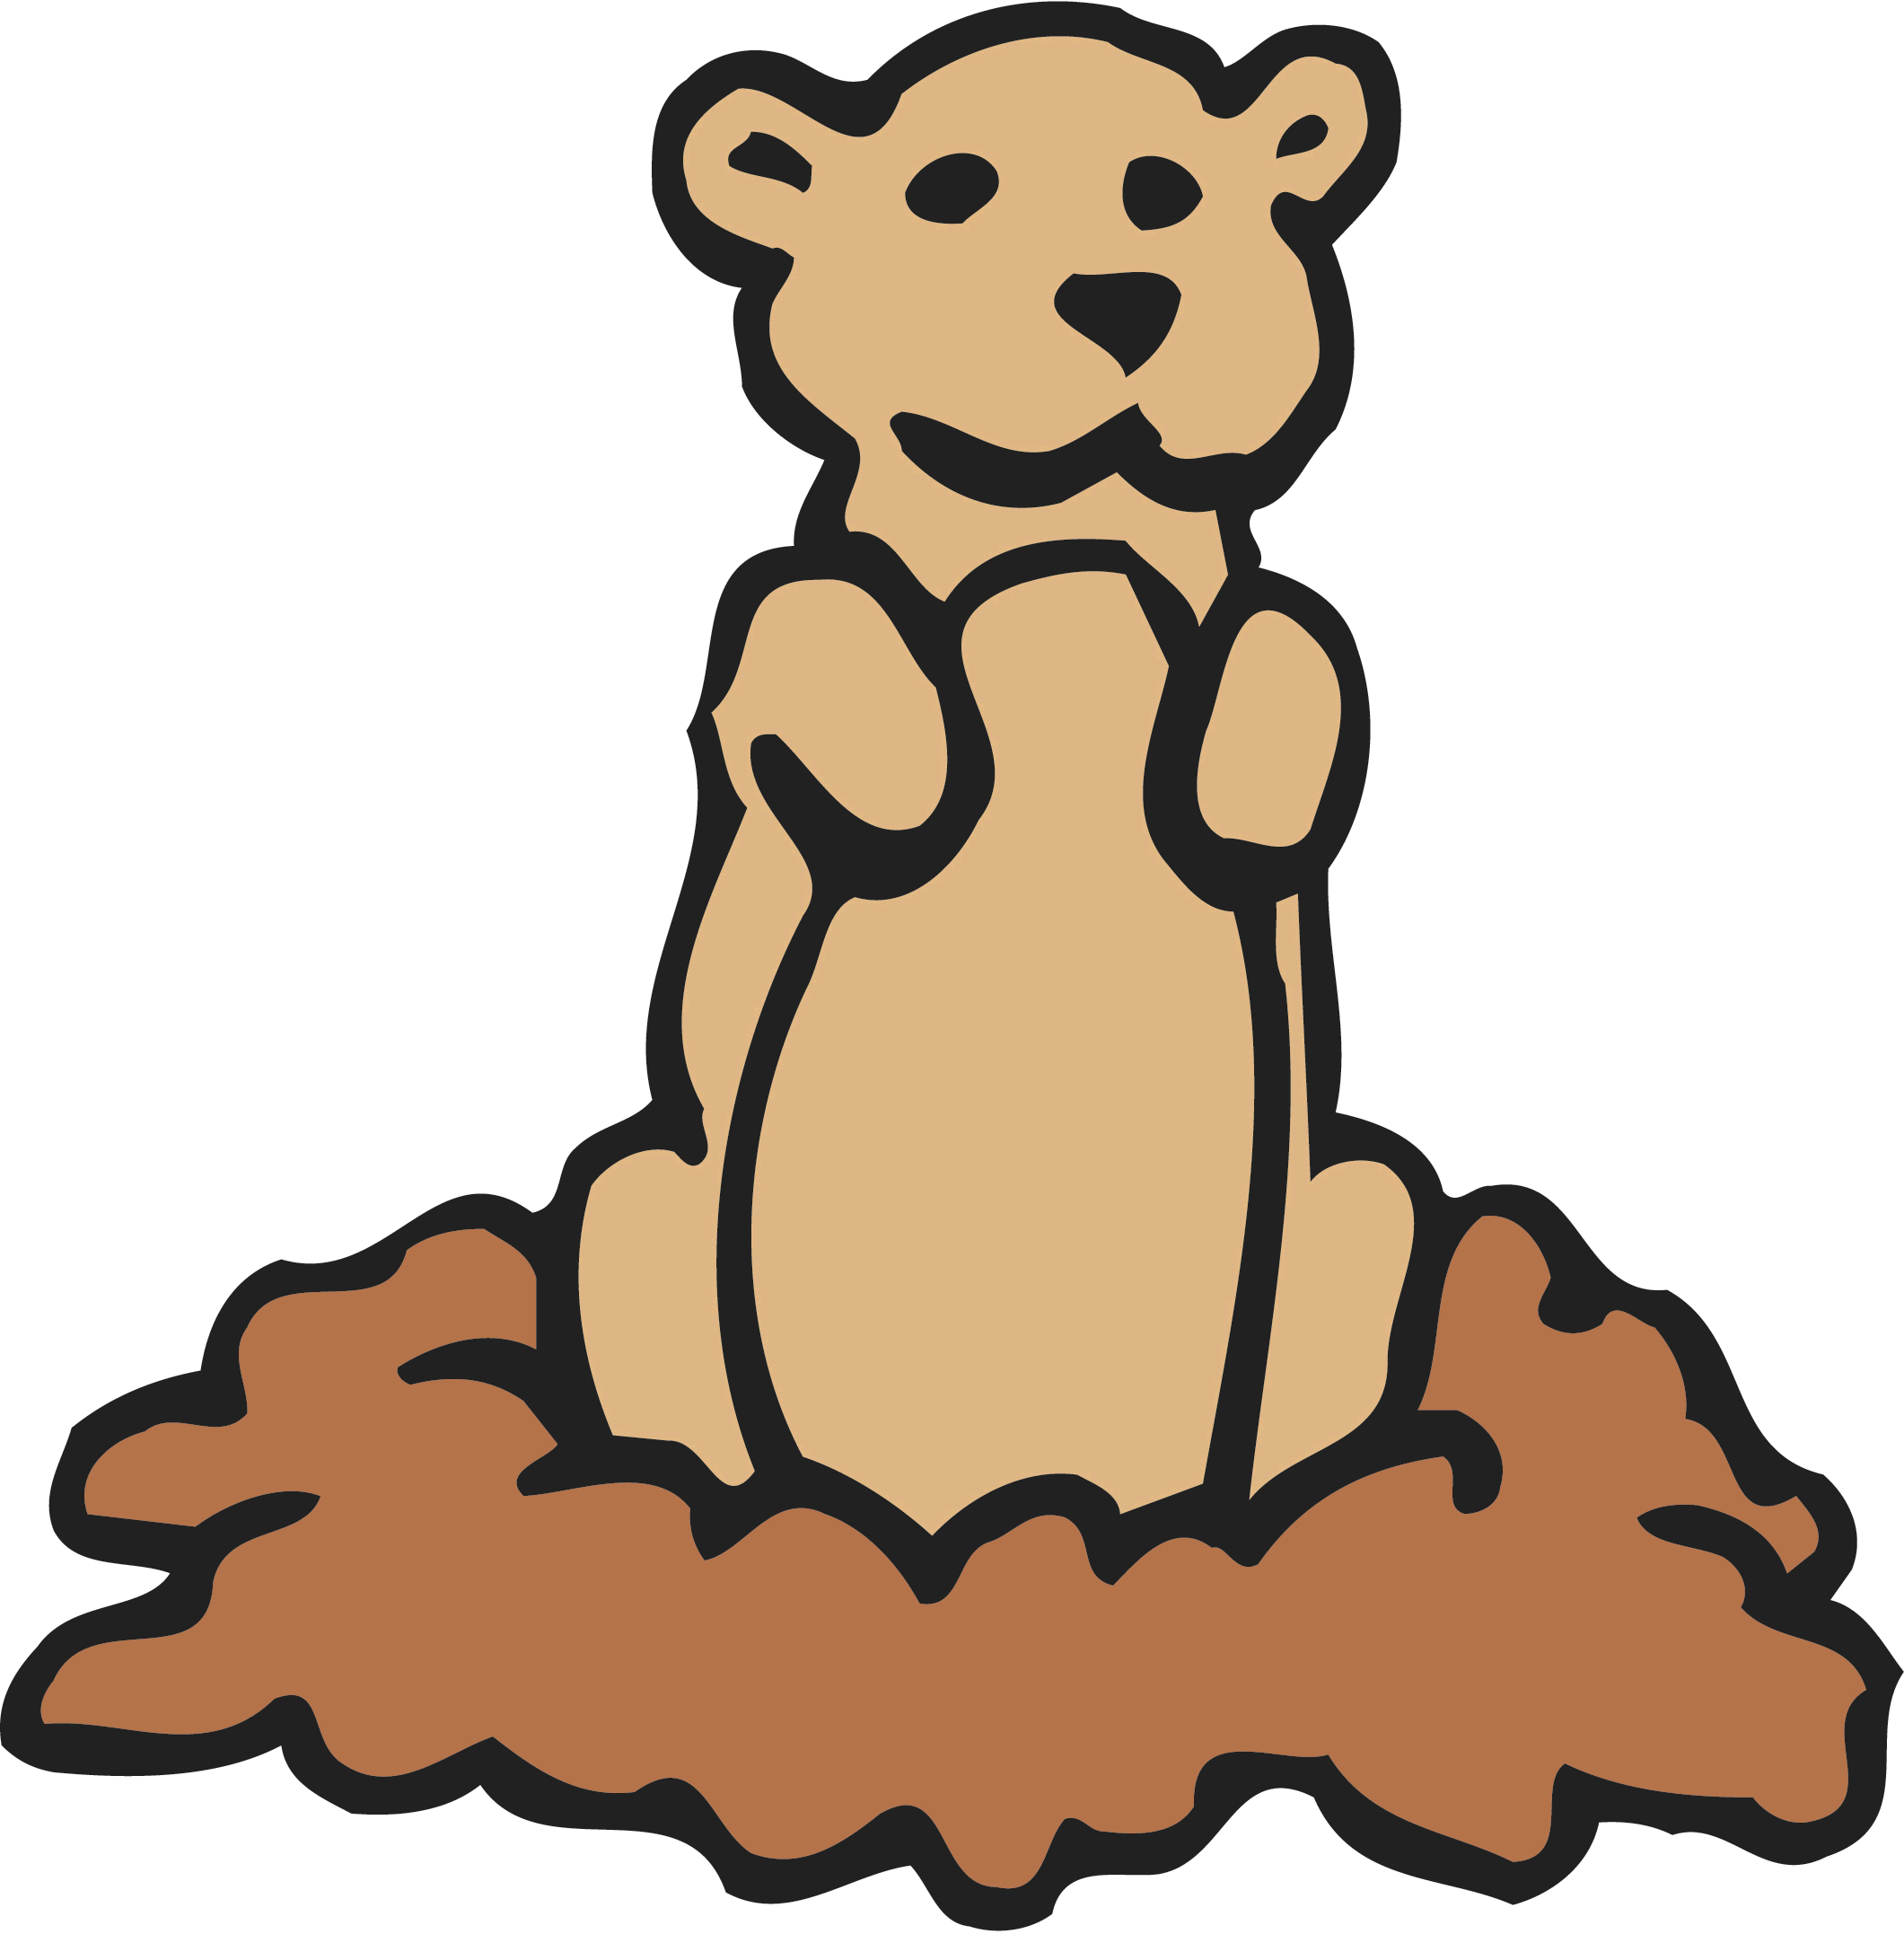 A Cartoon Of A Bear In A Hole